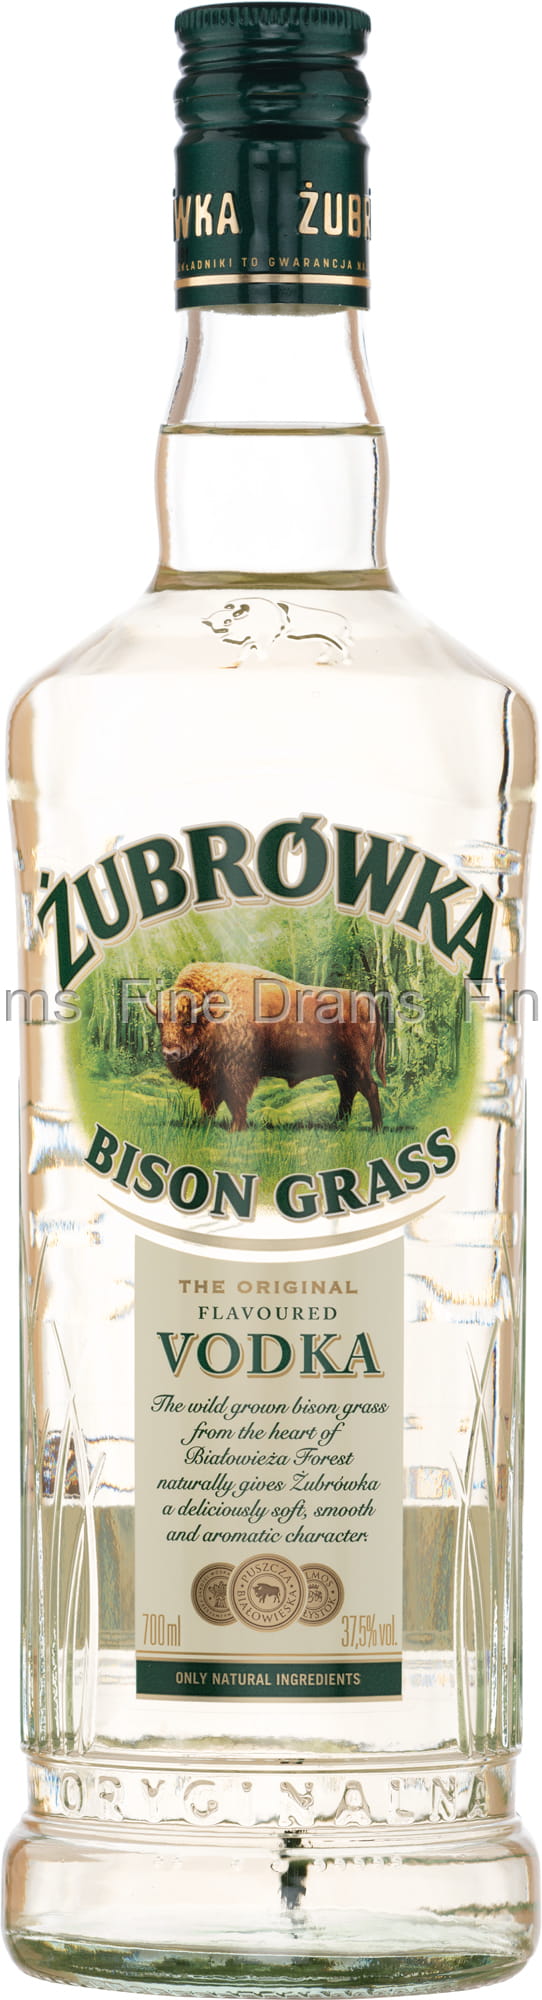 Vodka Grass Zubrowka Bison